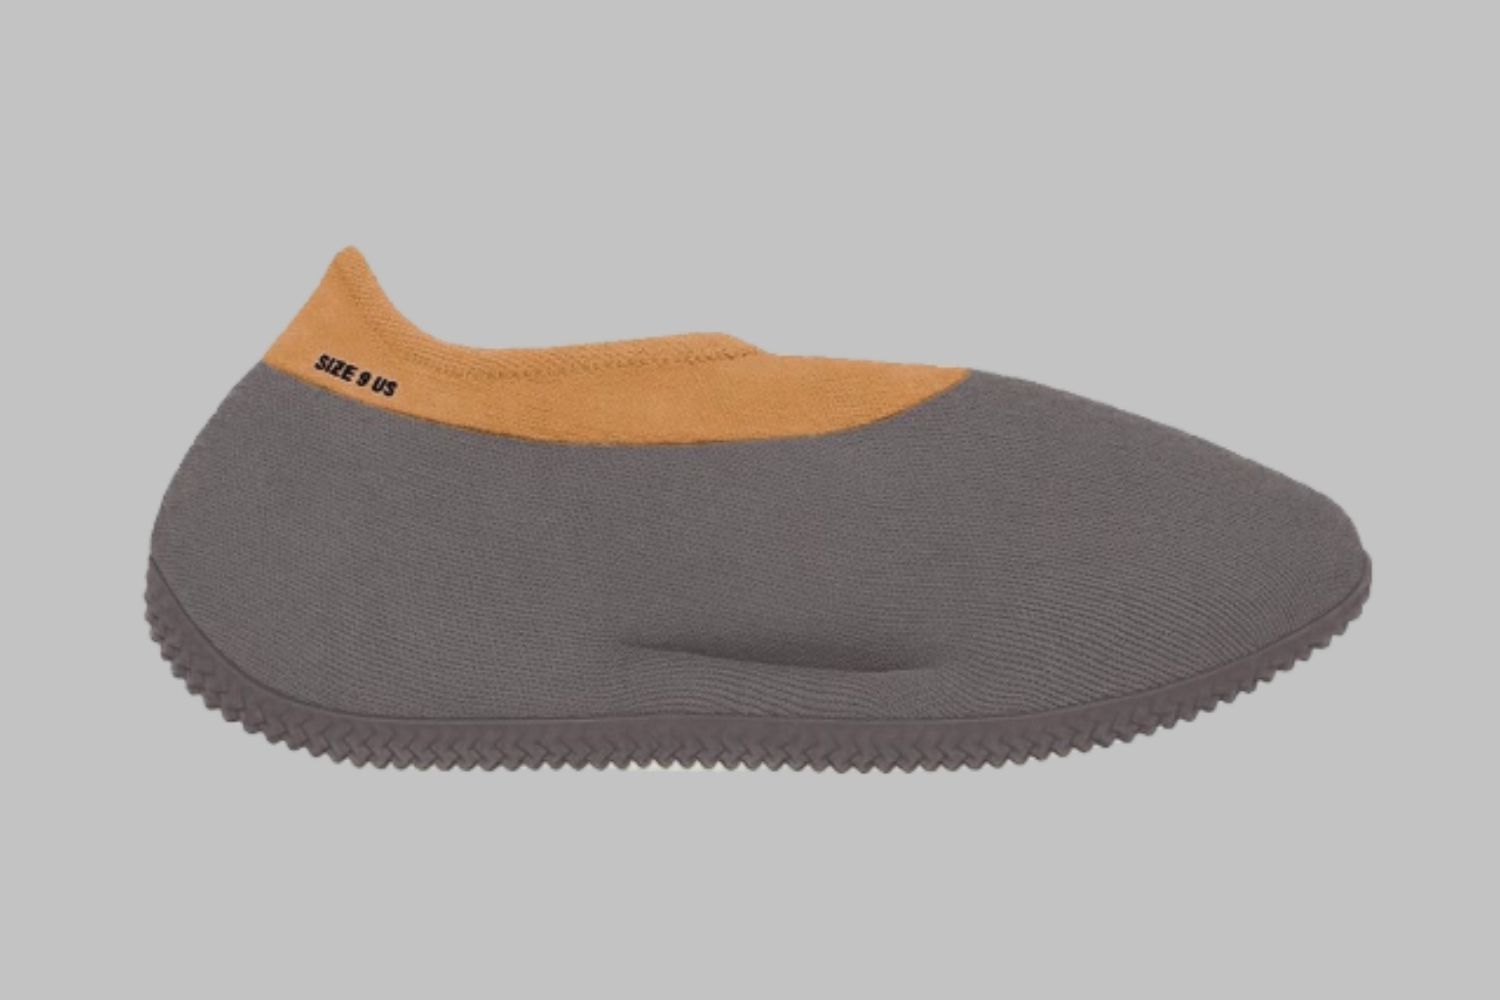 De adidas Yeezy Knit Runner in een 'Stone Carbon' colorway